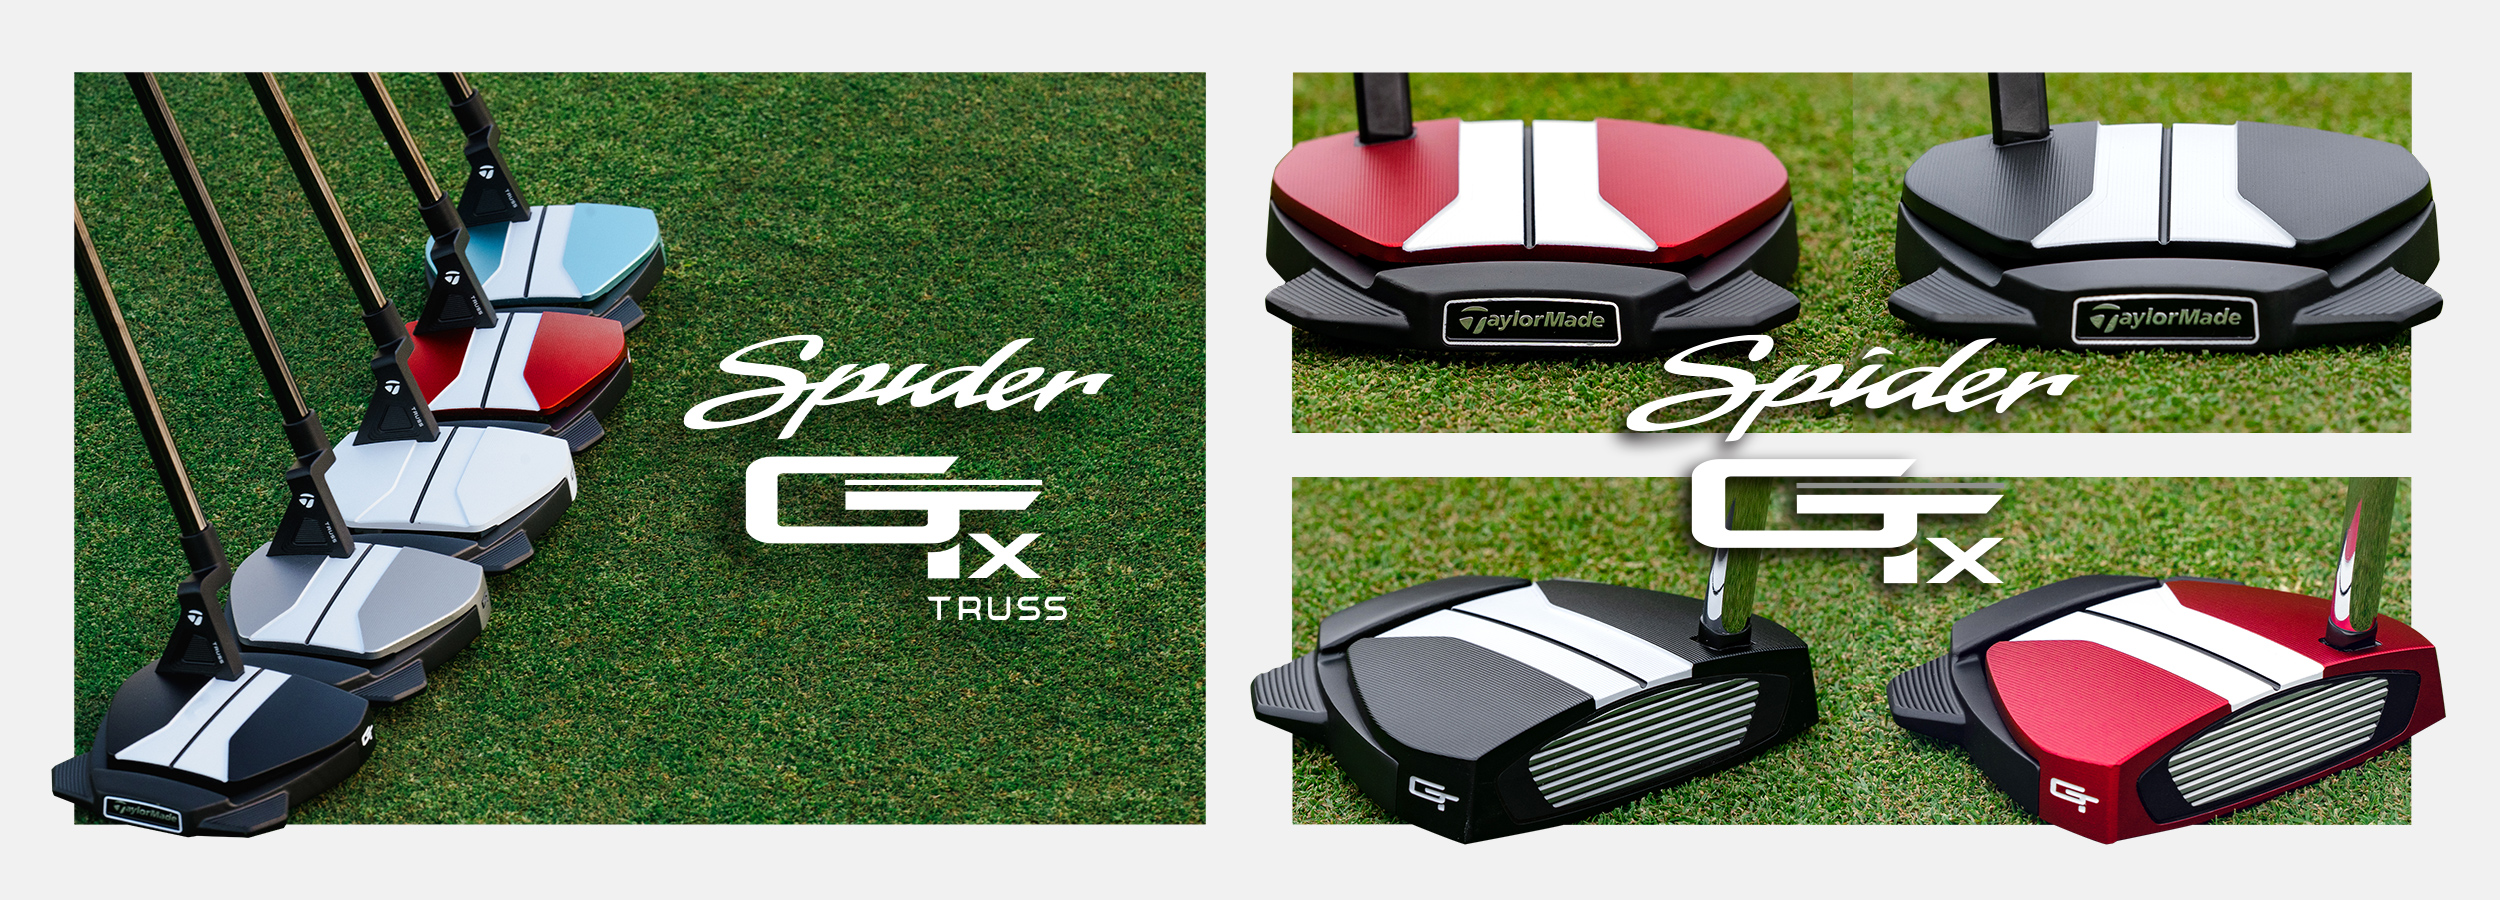 スパイダーGT X レッド シングルベンド パター | SPIDER GT X RED Single Bend | TaylorMade Golf |  テーラーメイド ゴルフ公式サイト